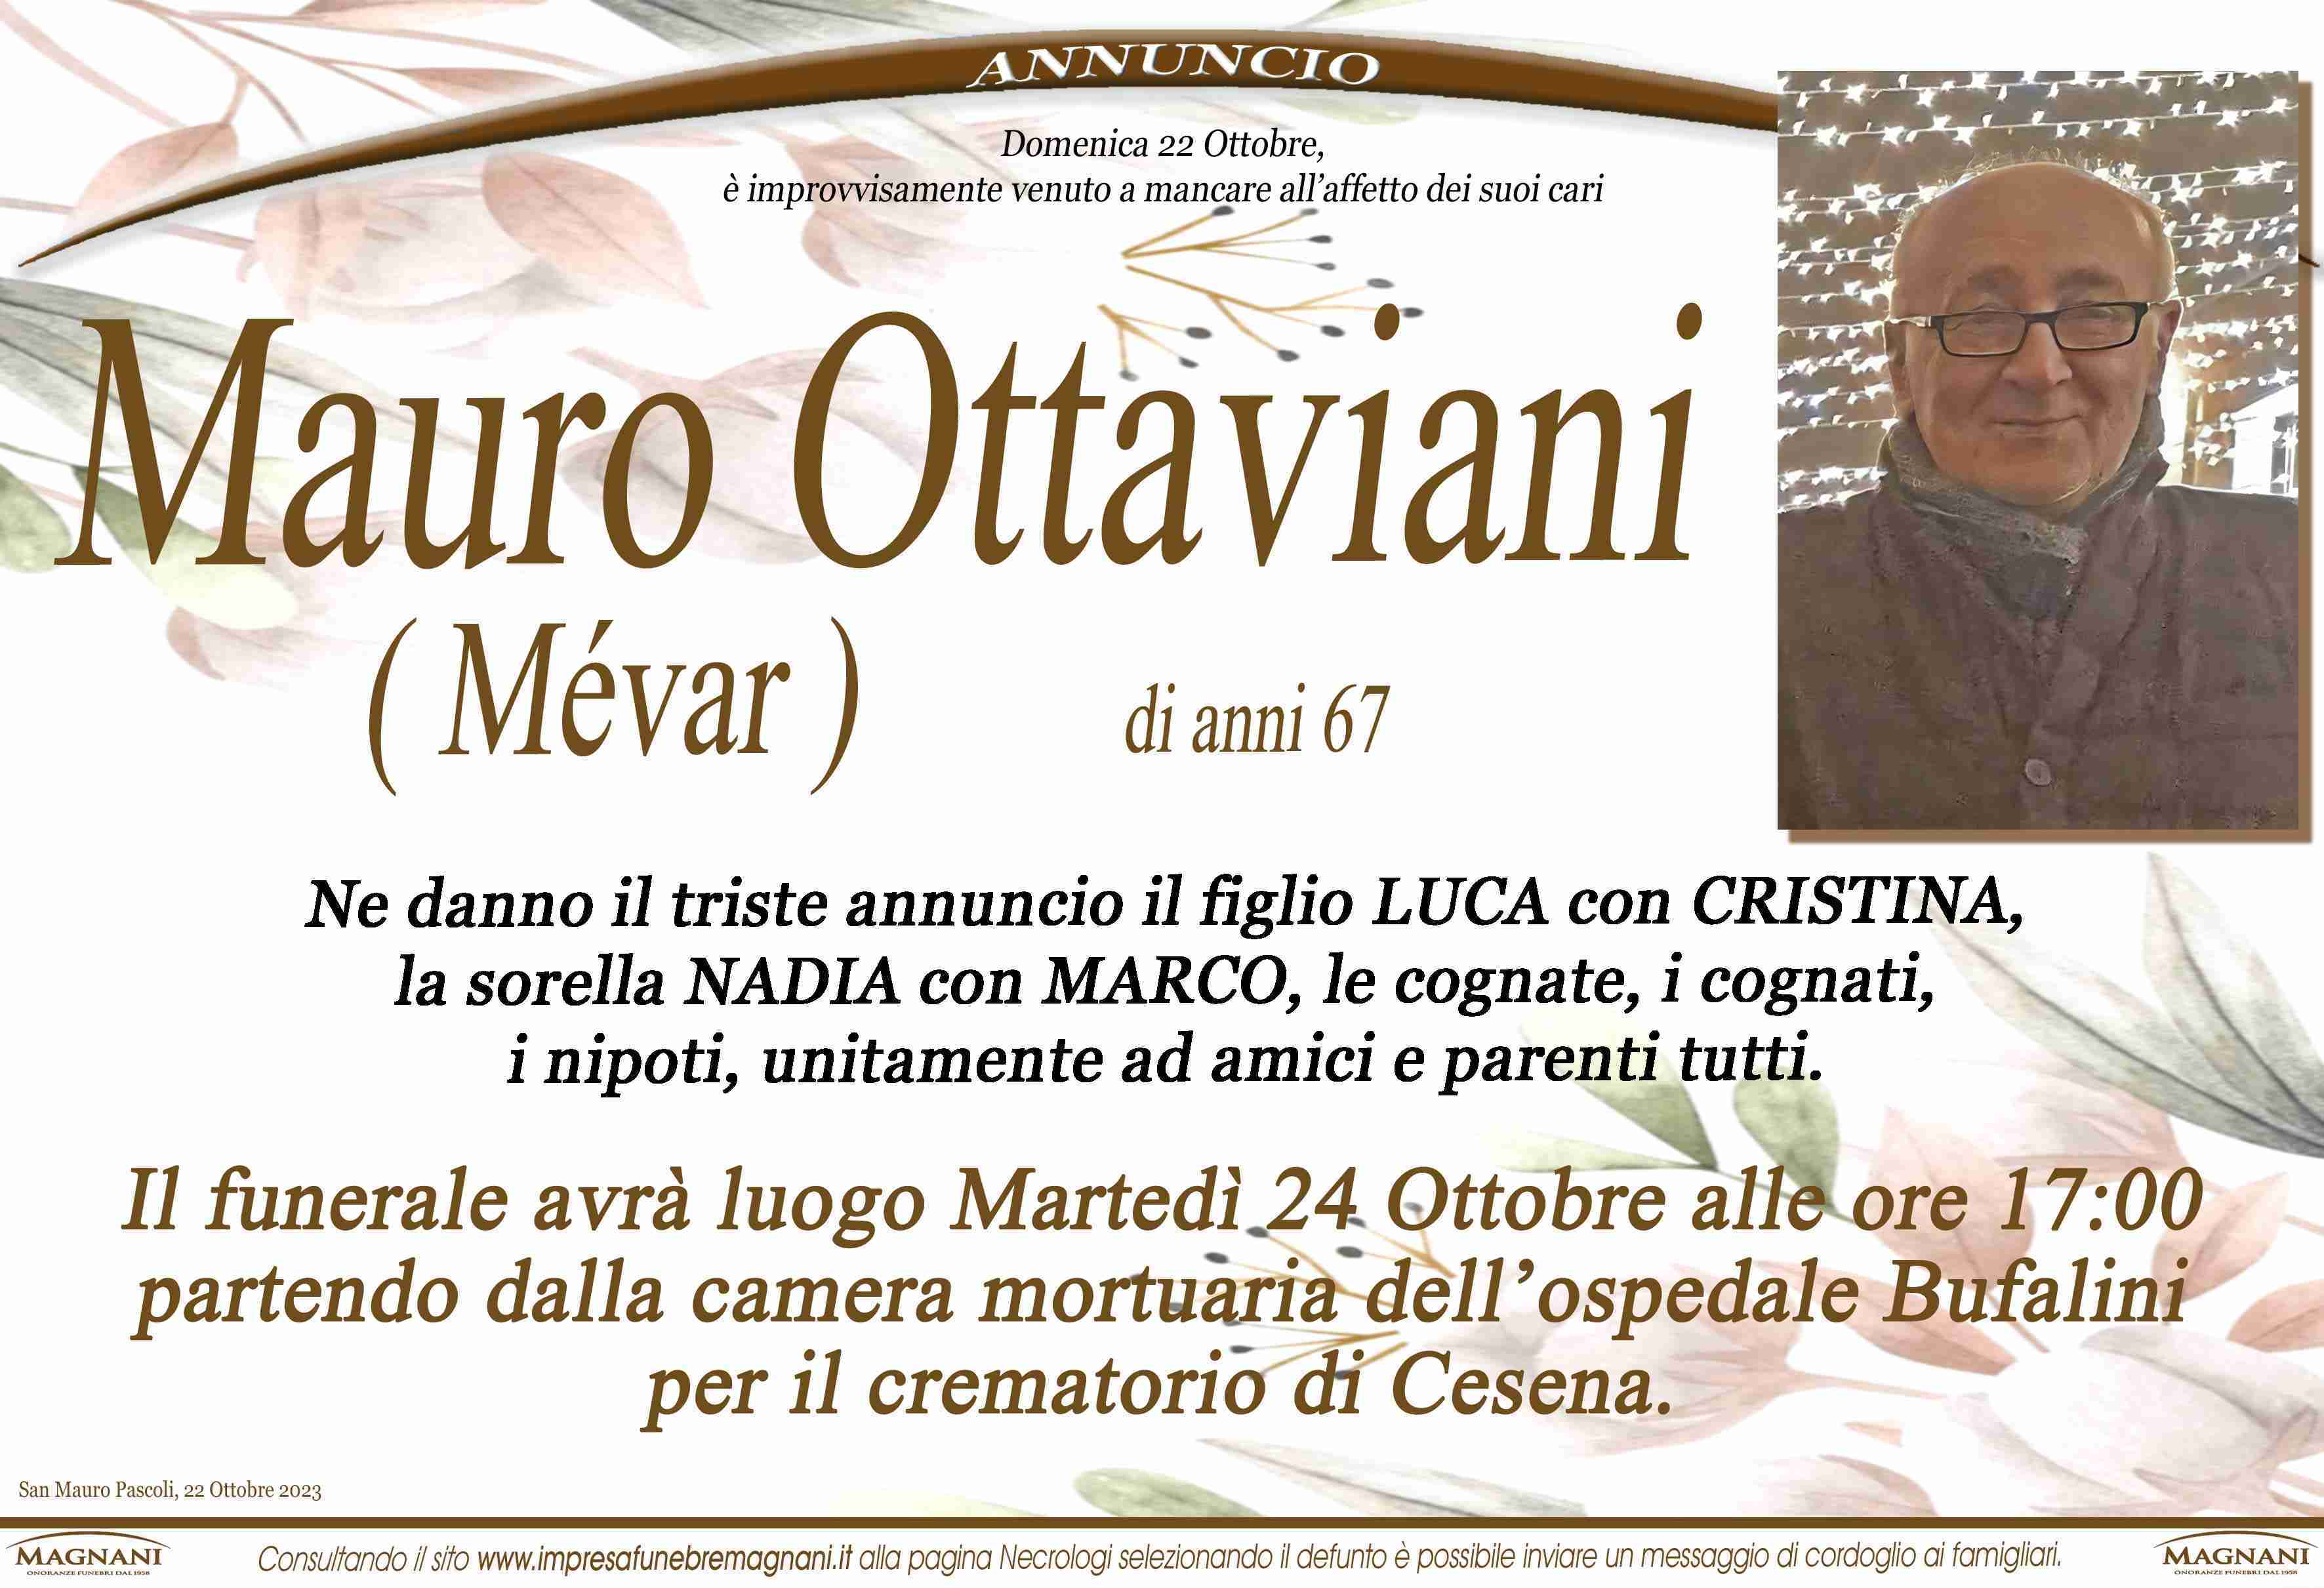 Mauro Ottaviani